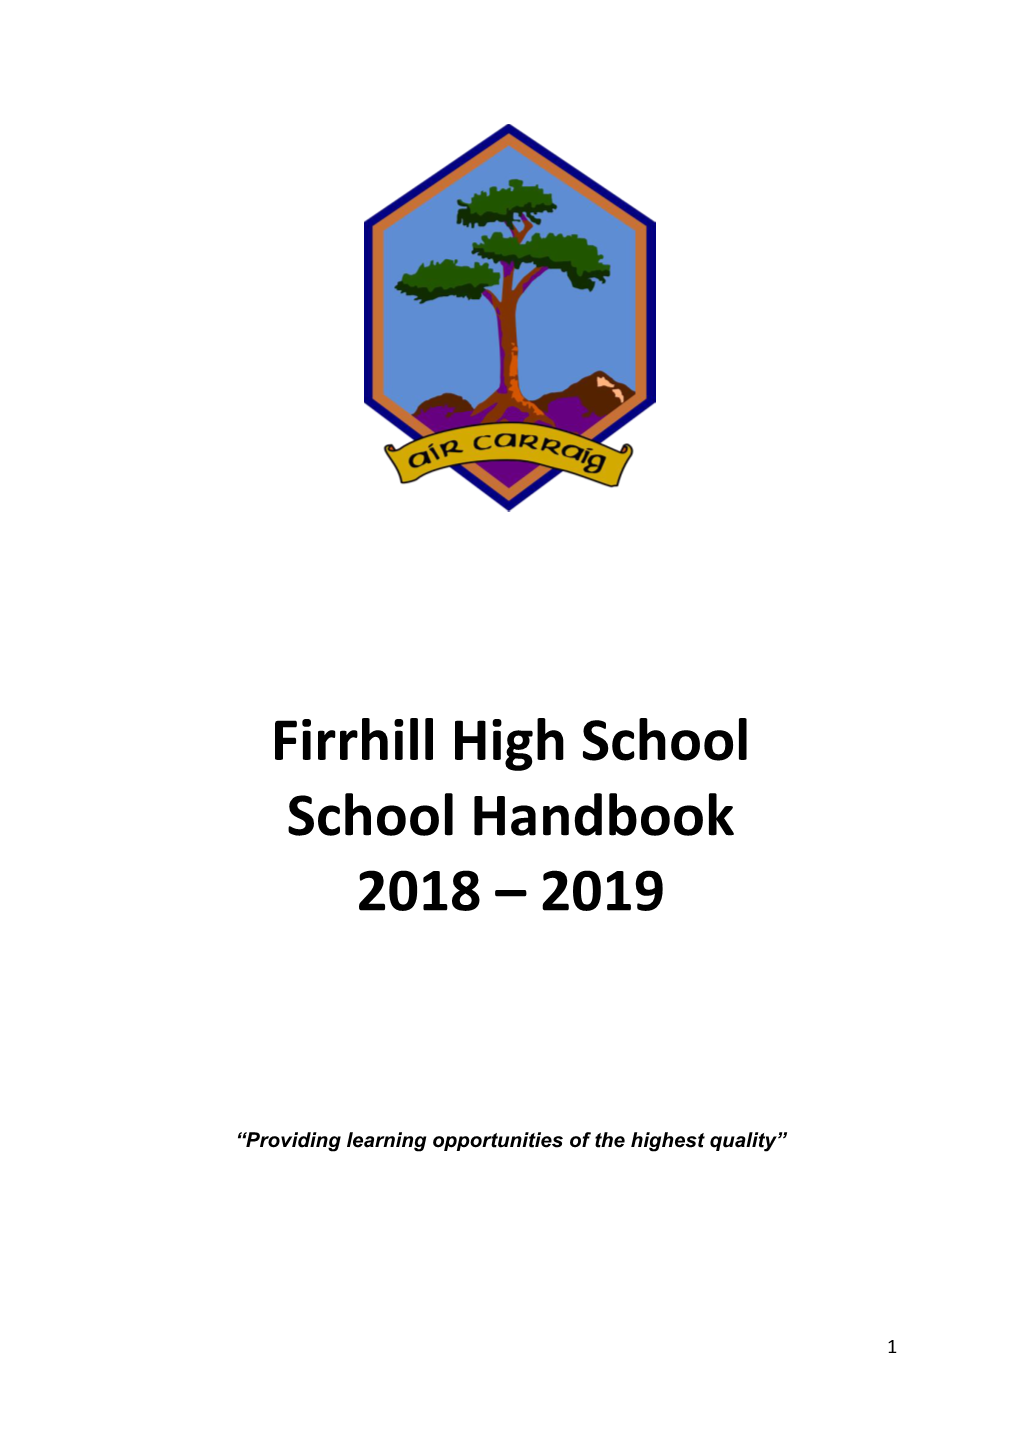 Firrhill High School School Handbook 2018 – 2019